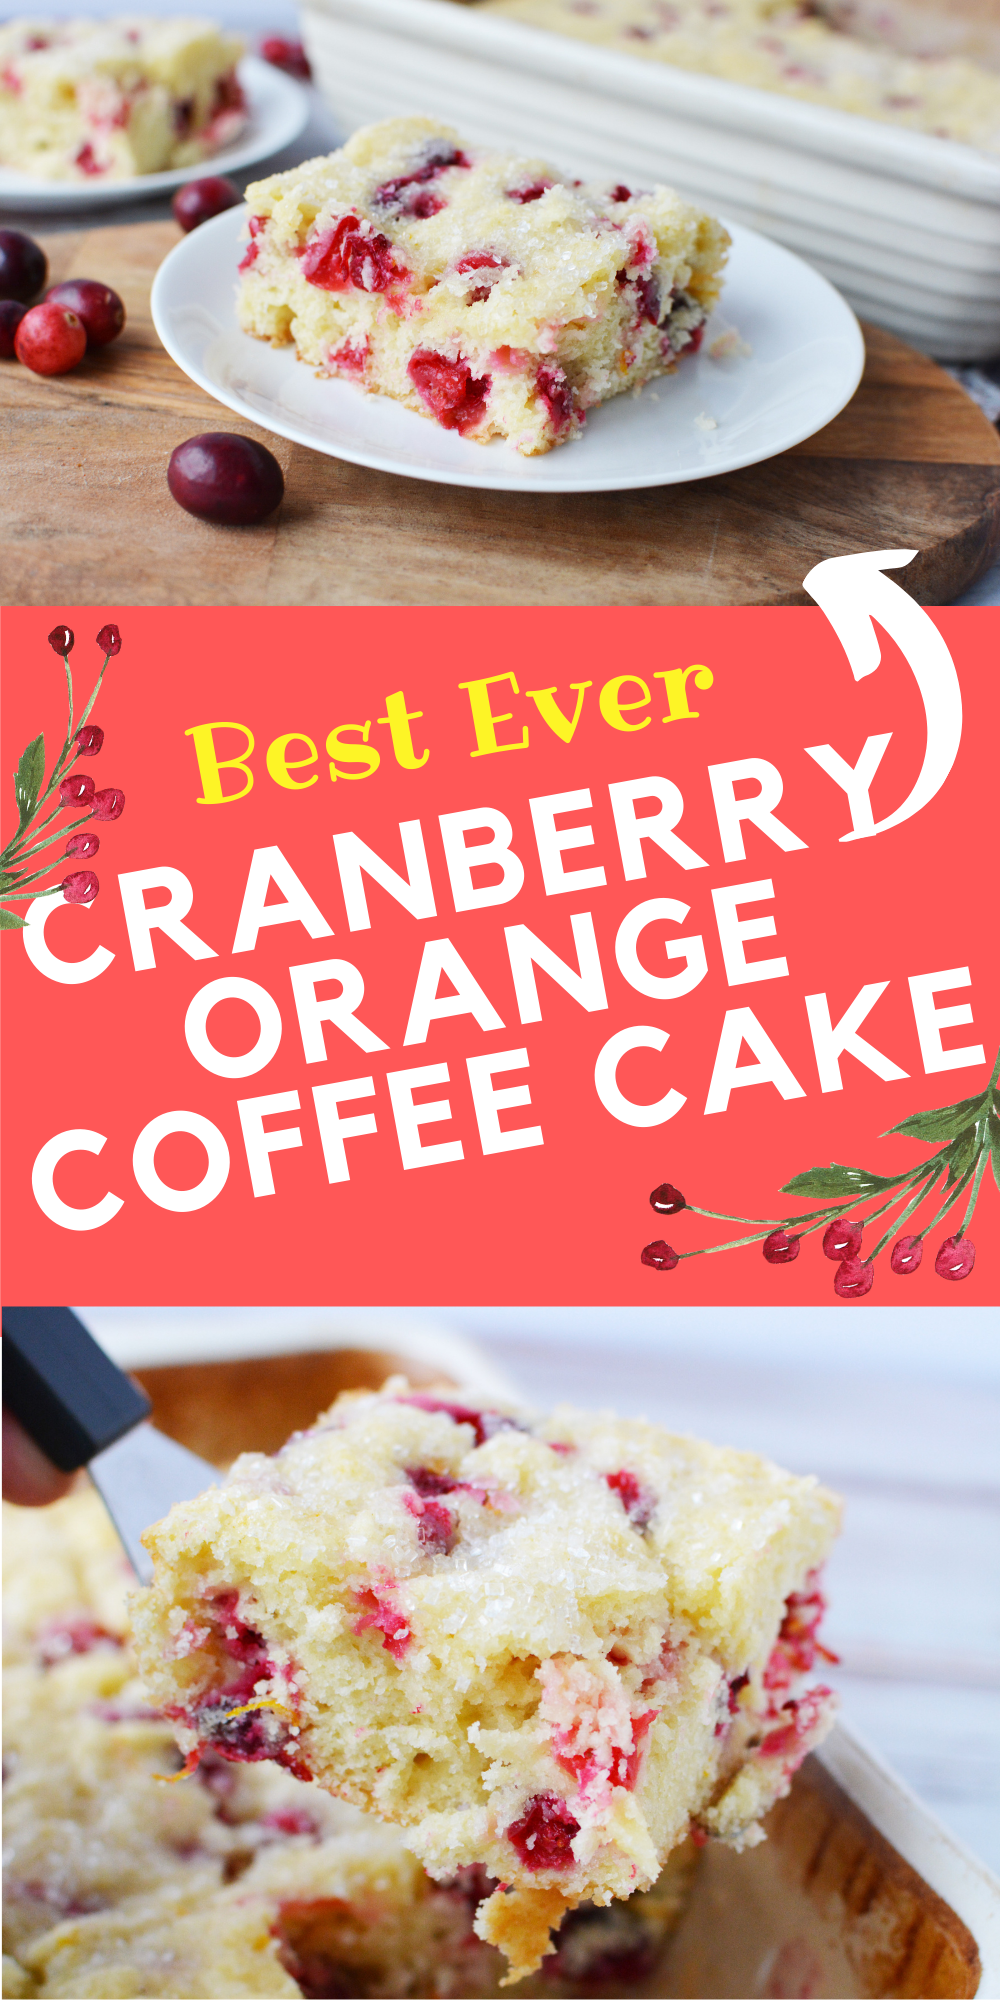 Cranberry Orange Coffee Cake Recipe for Christmas Dessert